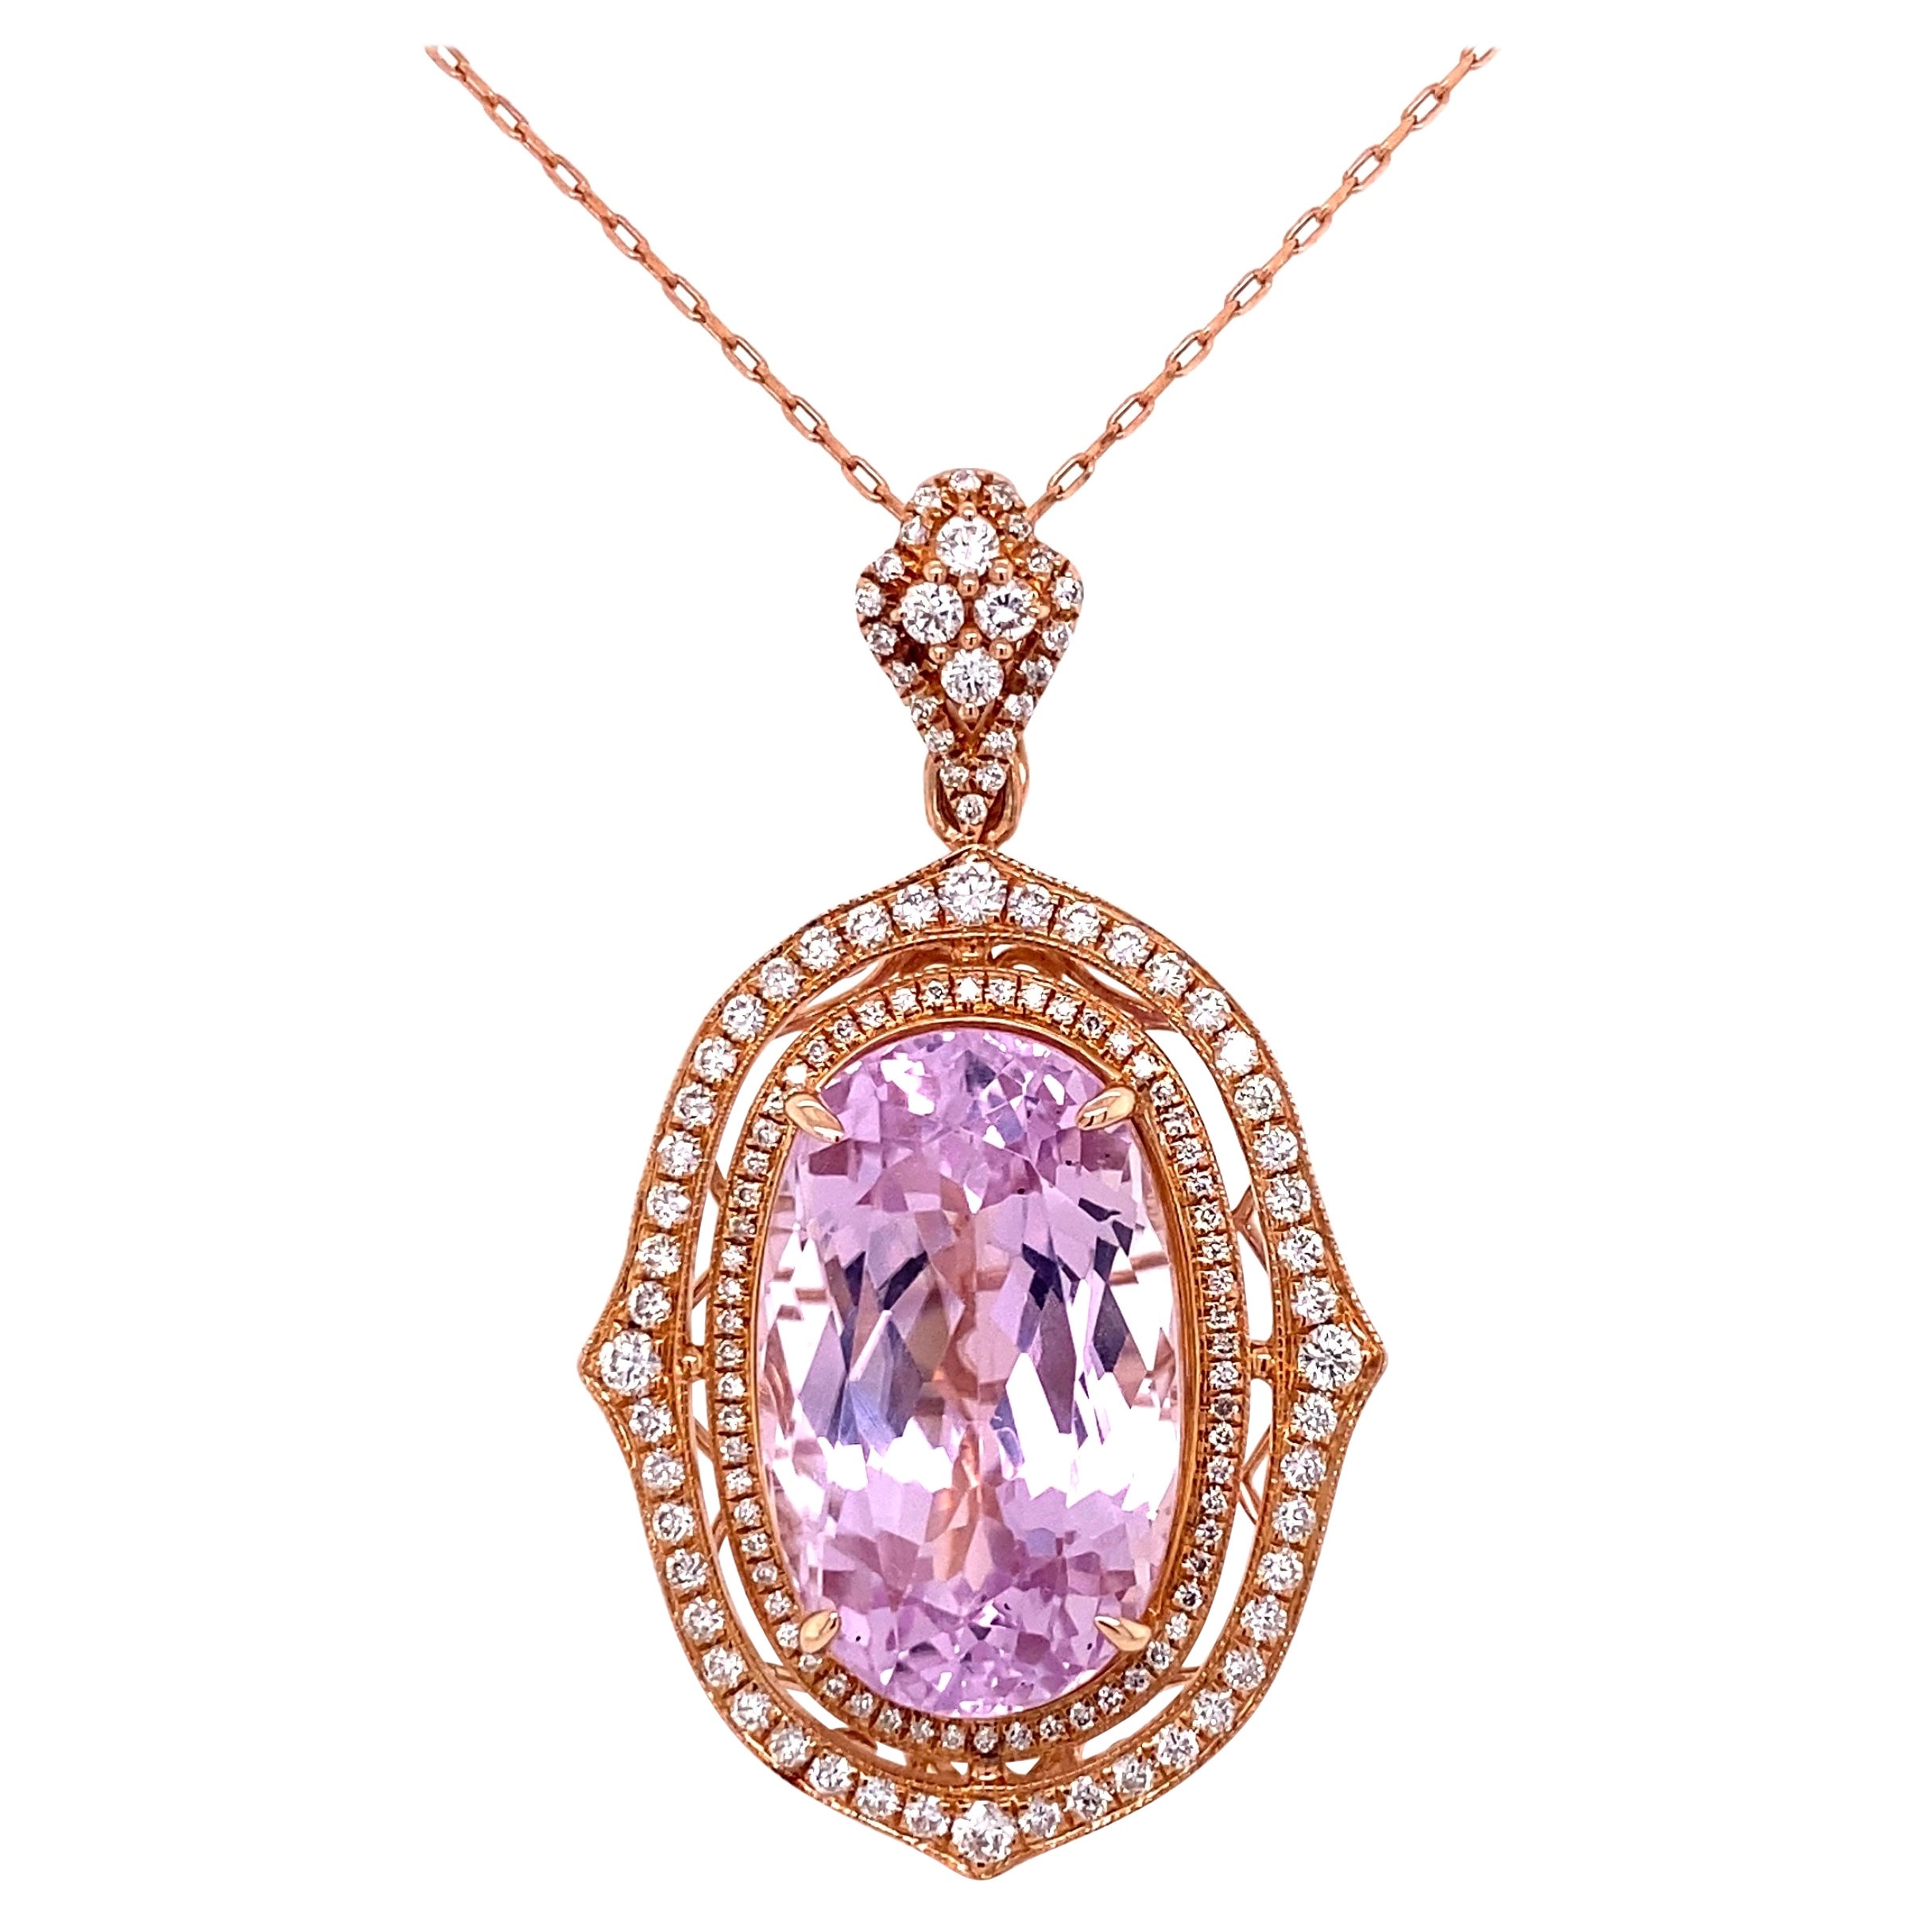 Collier pendentif en or rose avec kunzite et diamants de 21,20 carats, ancienne propriété de joaillerie